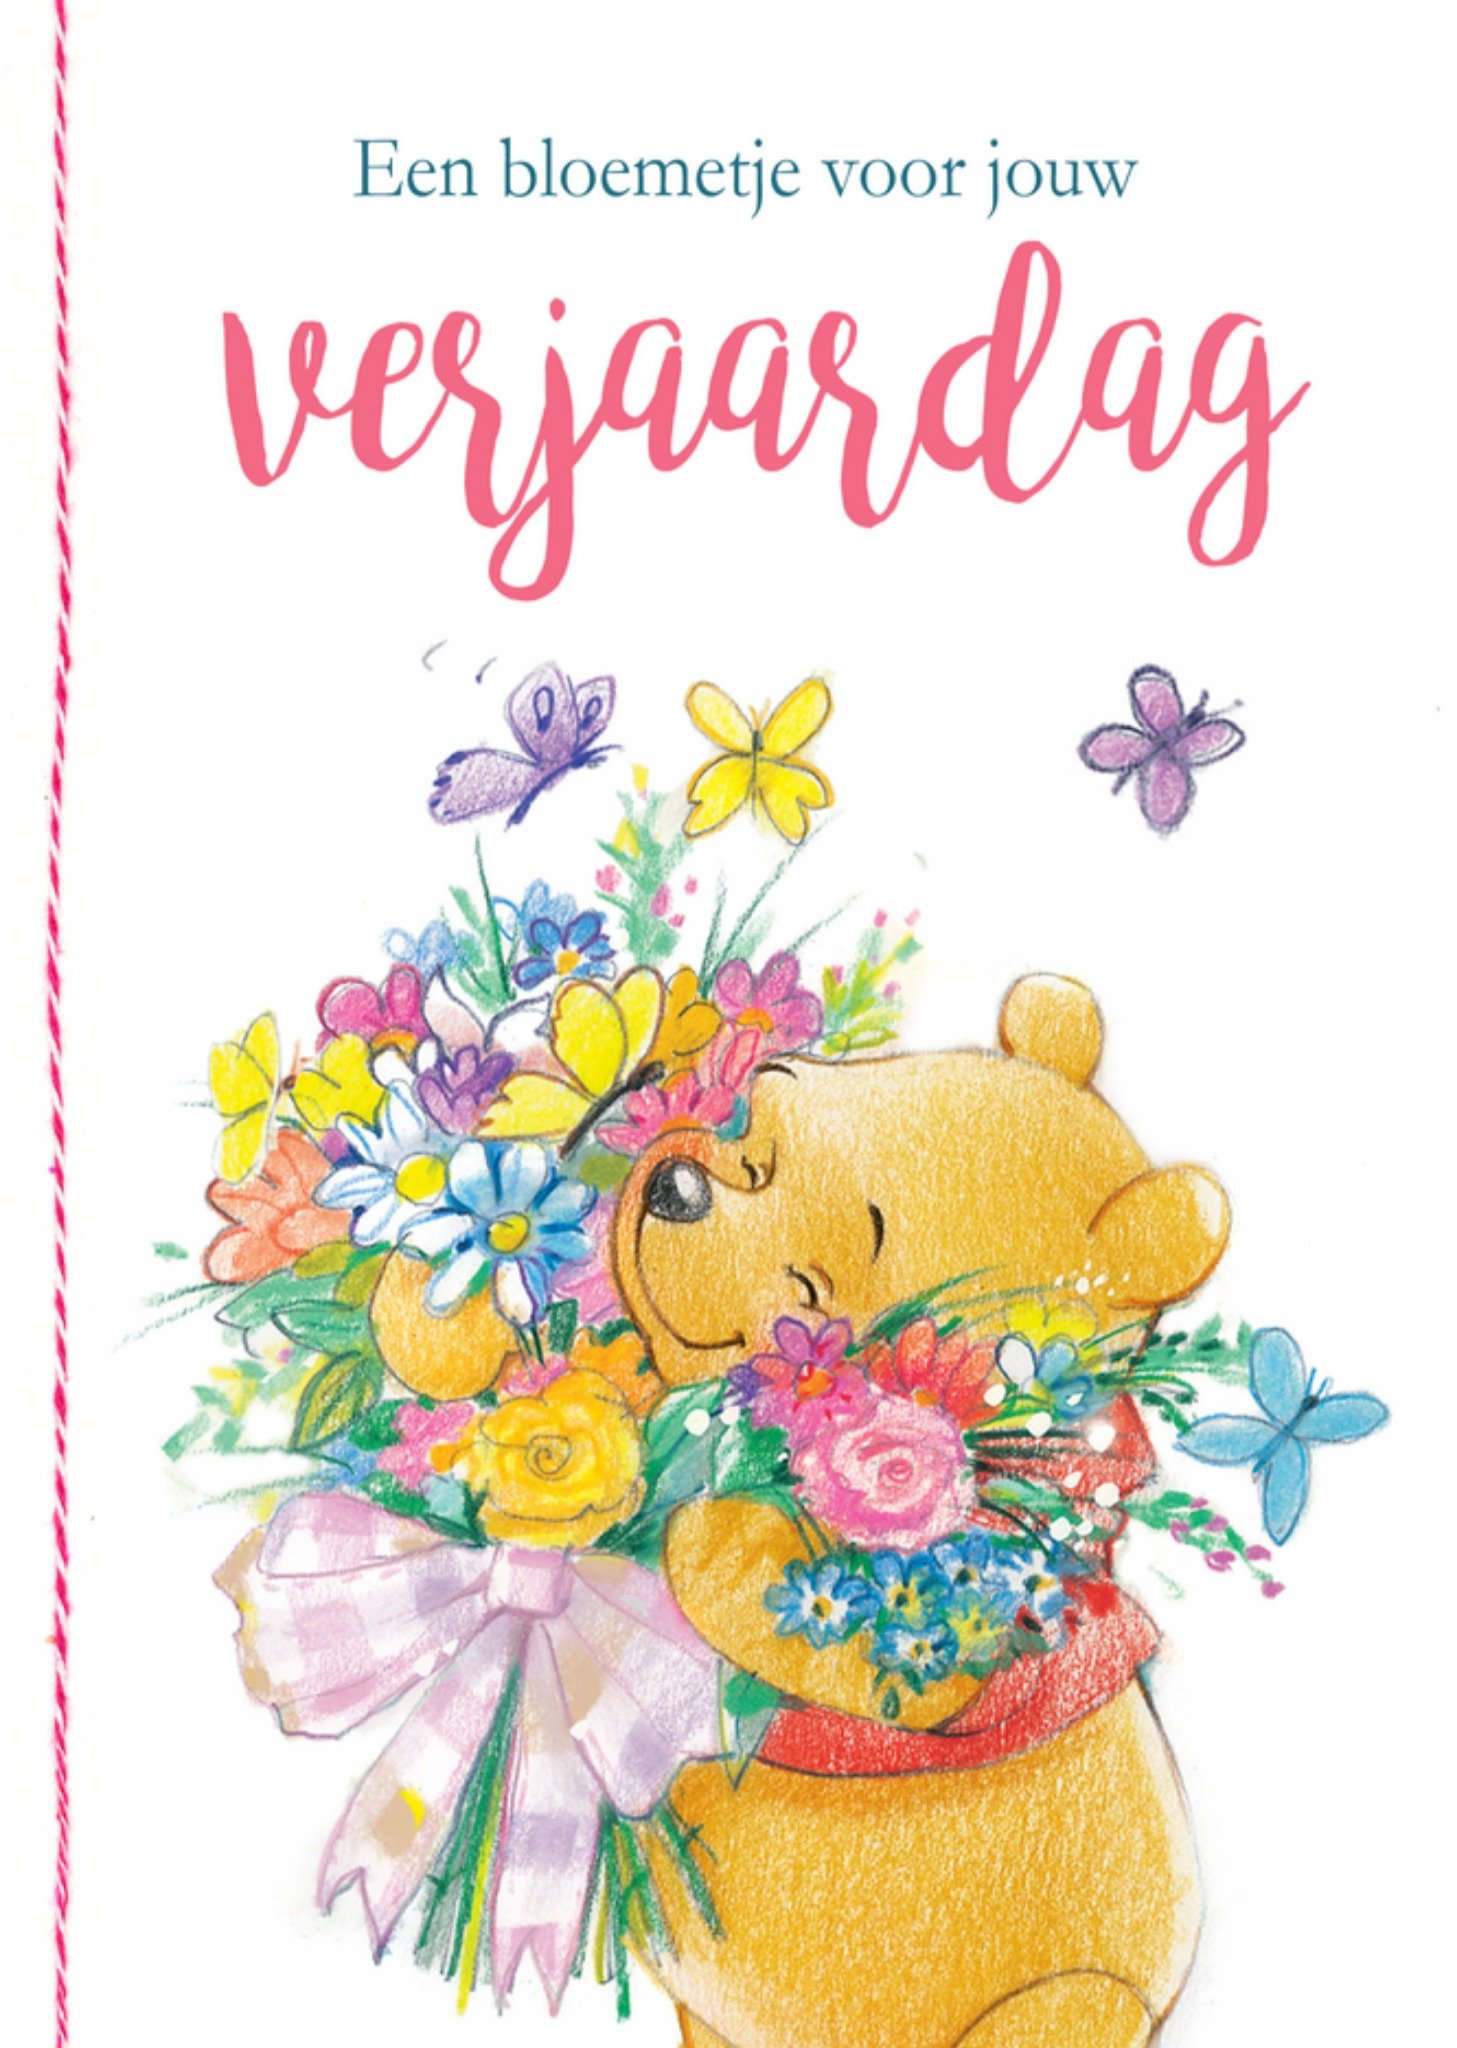 Disney - Verjaardagskaart - Winnie the Pooh - Bloemetje